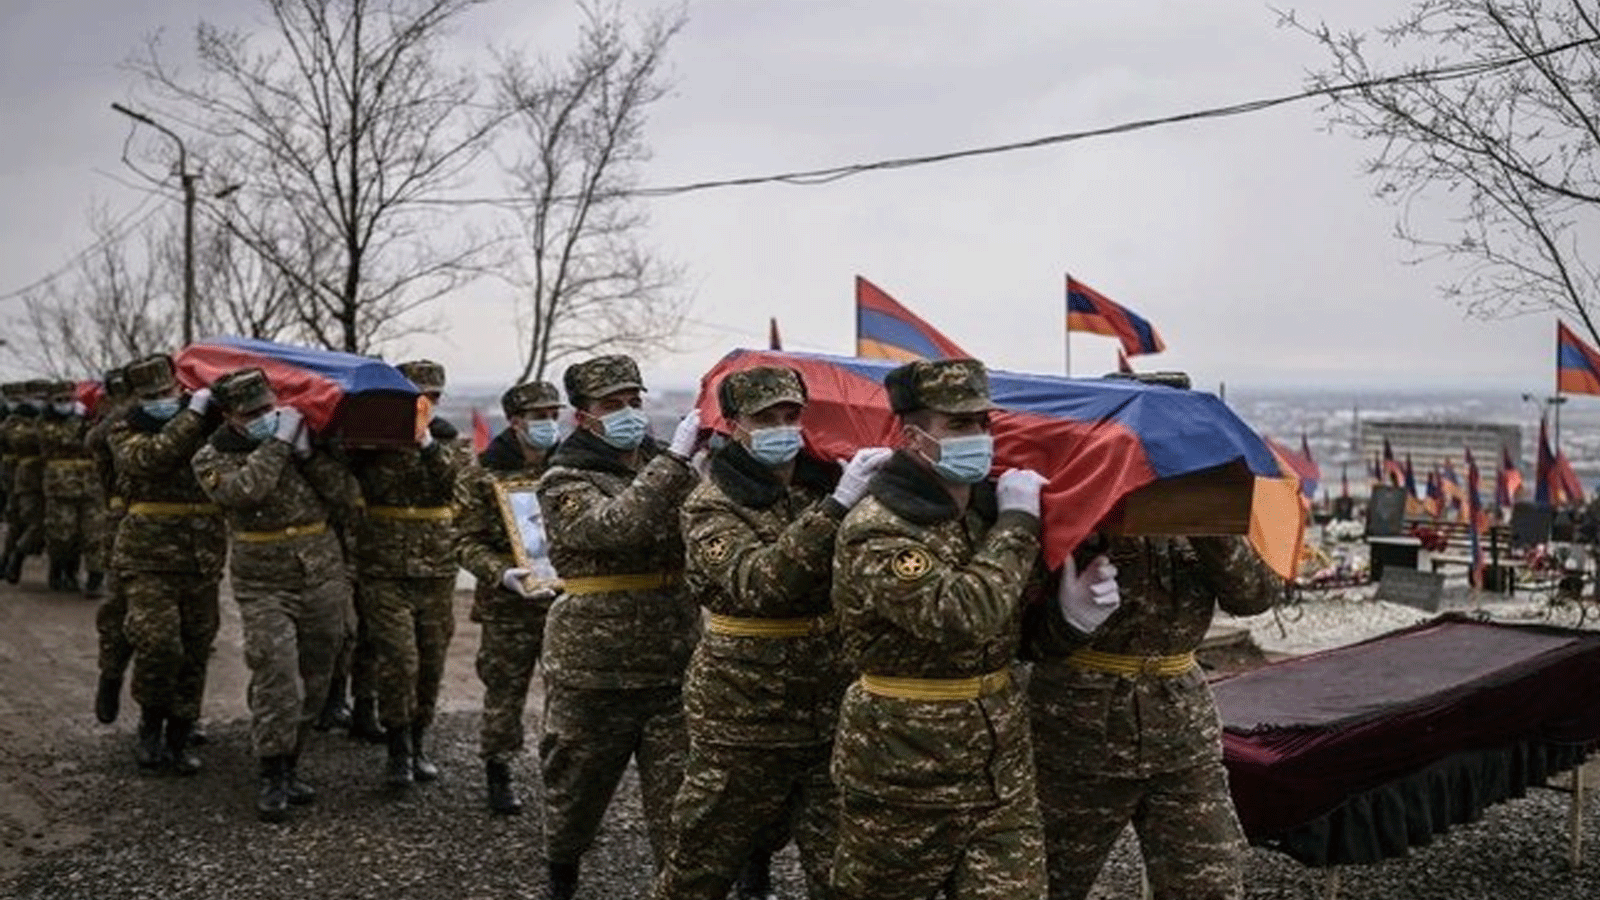 جنود يحملون النعوش خلال الجنازات في مقبرة عسكرية في يريفان في 2 آذار\مارس 2021 ، لمقاتلين سقطوا خلال الحرب في ناغورنو كاراباخ.